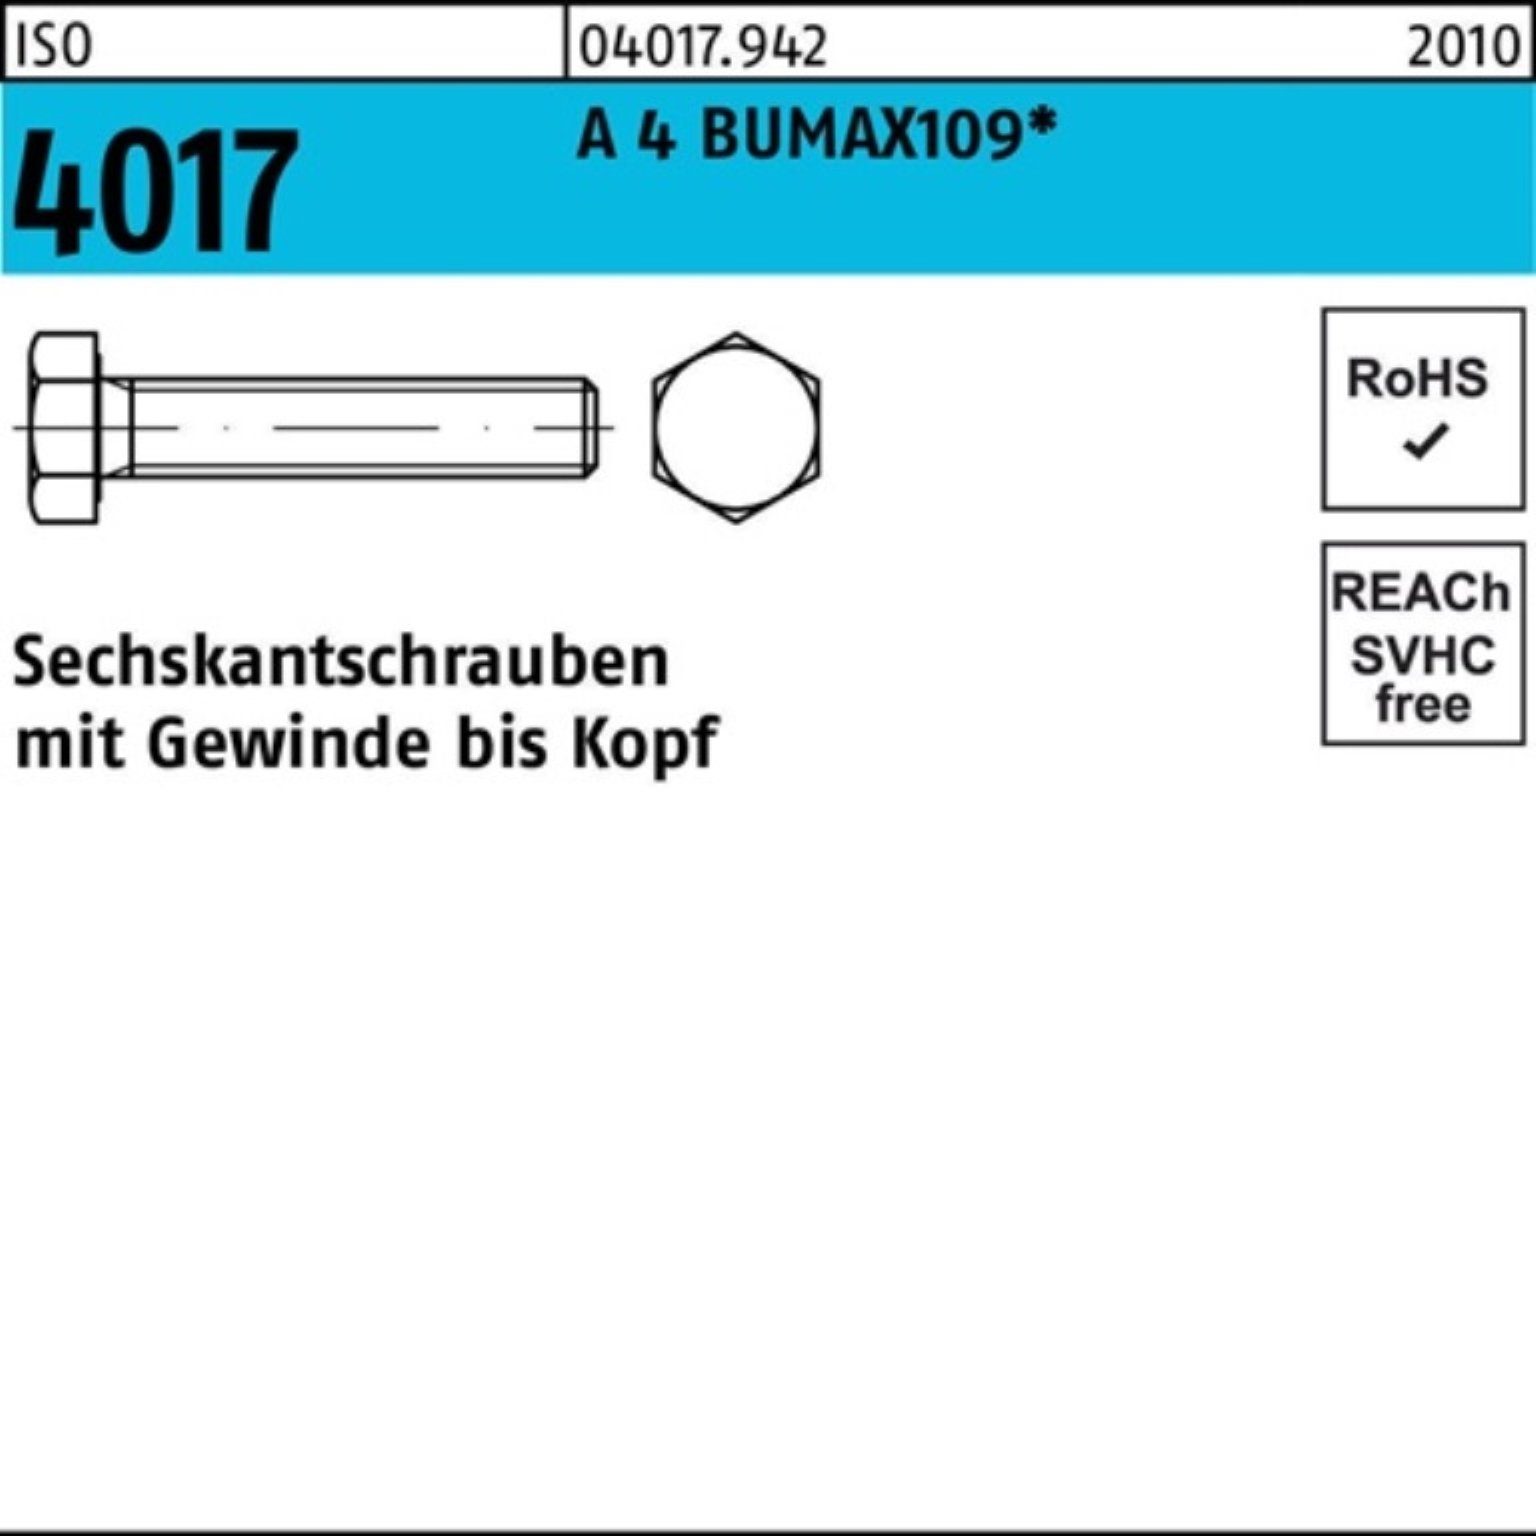 Bufab Sechskantschraube Stüc Pack A 4017 Sechskantschraube BUMAX109 100er 25 ISO 4 M16x VG 40